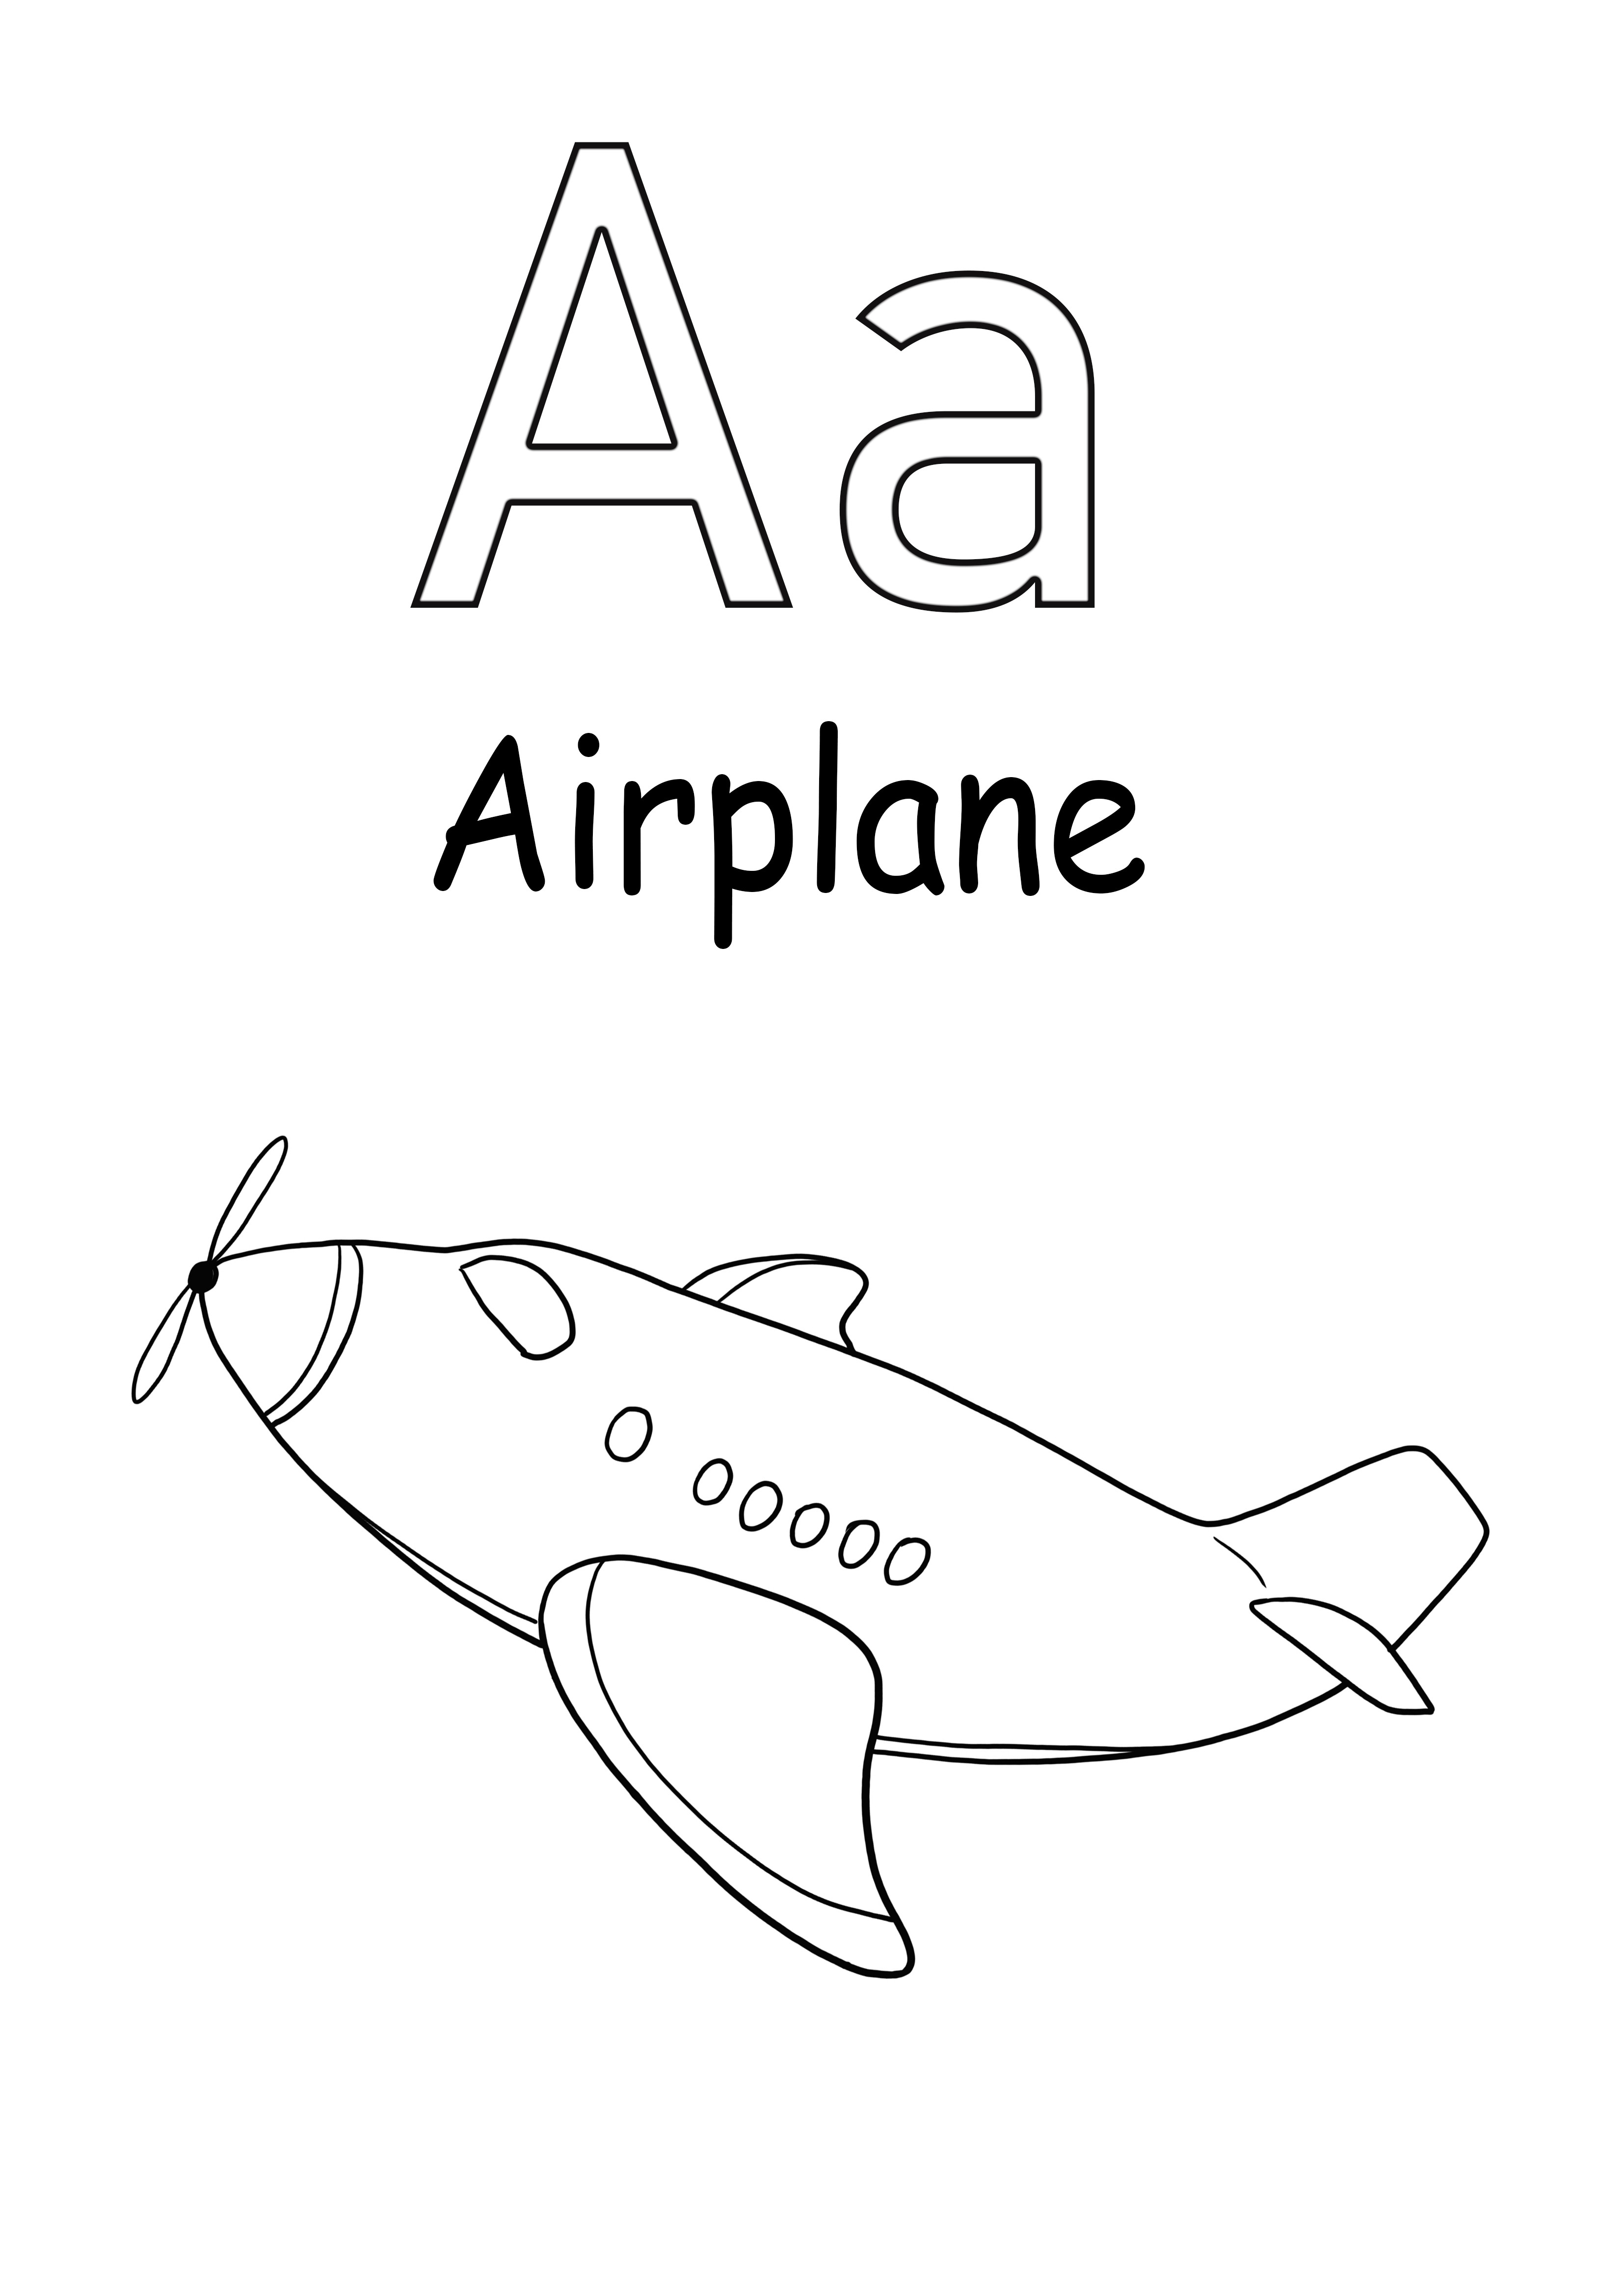 A è per l'aeroplano stampabile gratuitamente per la colorazione per i bambini